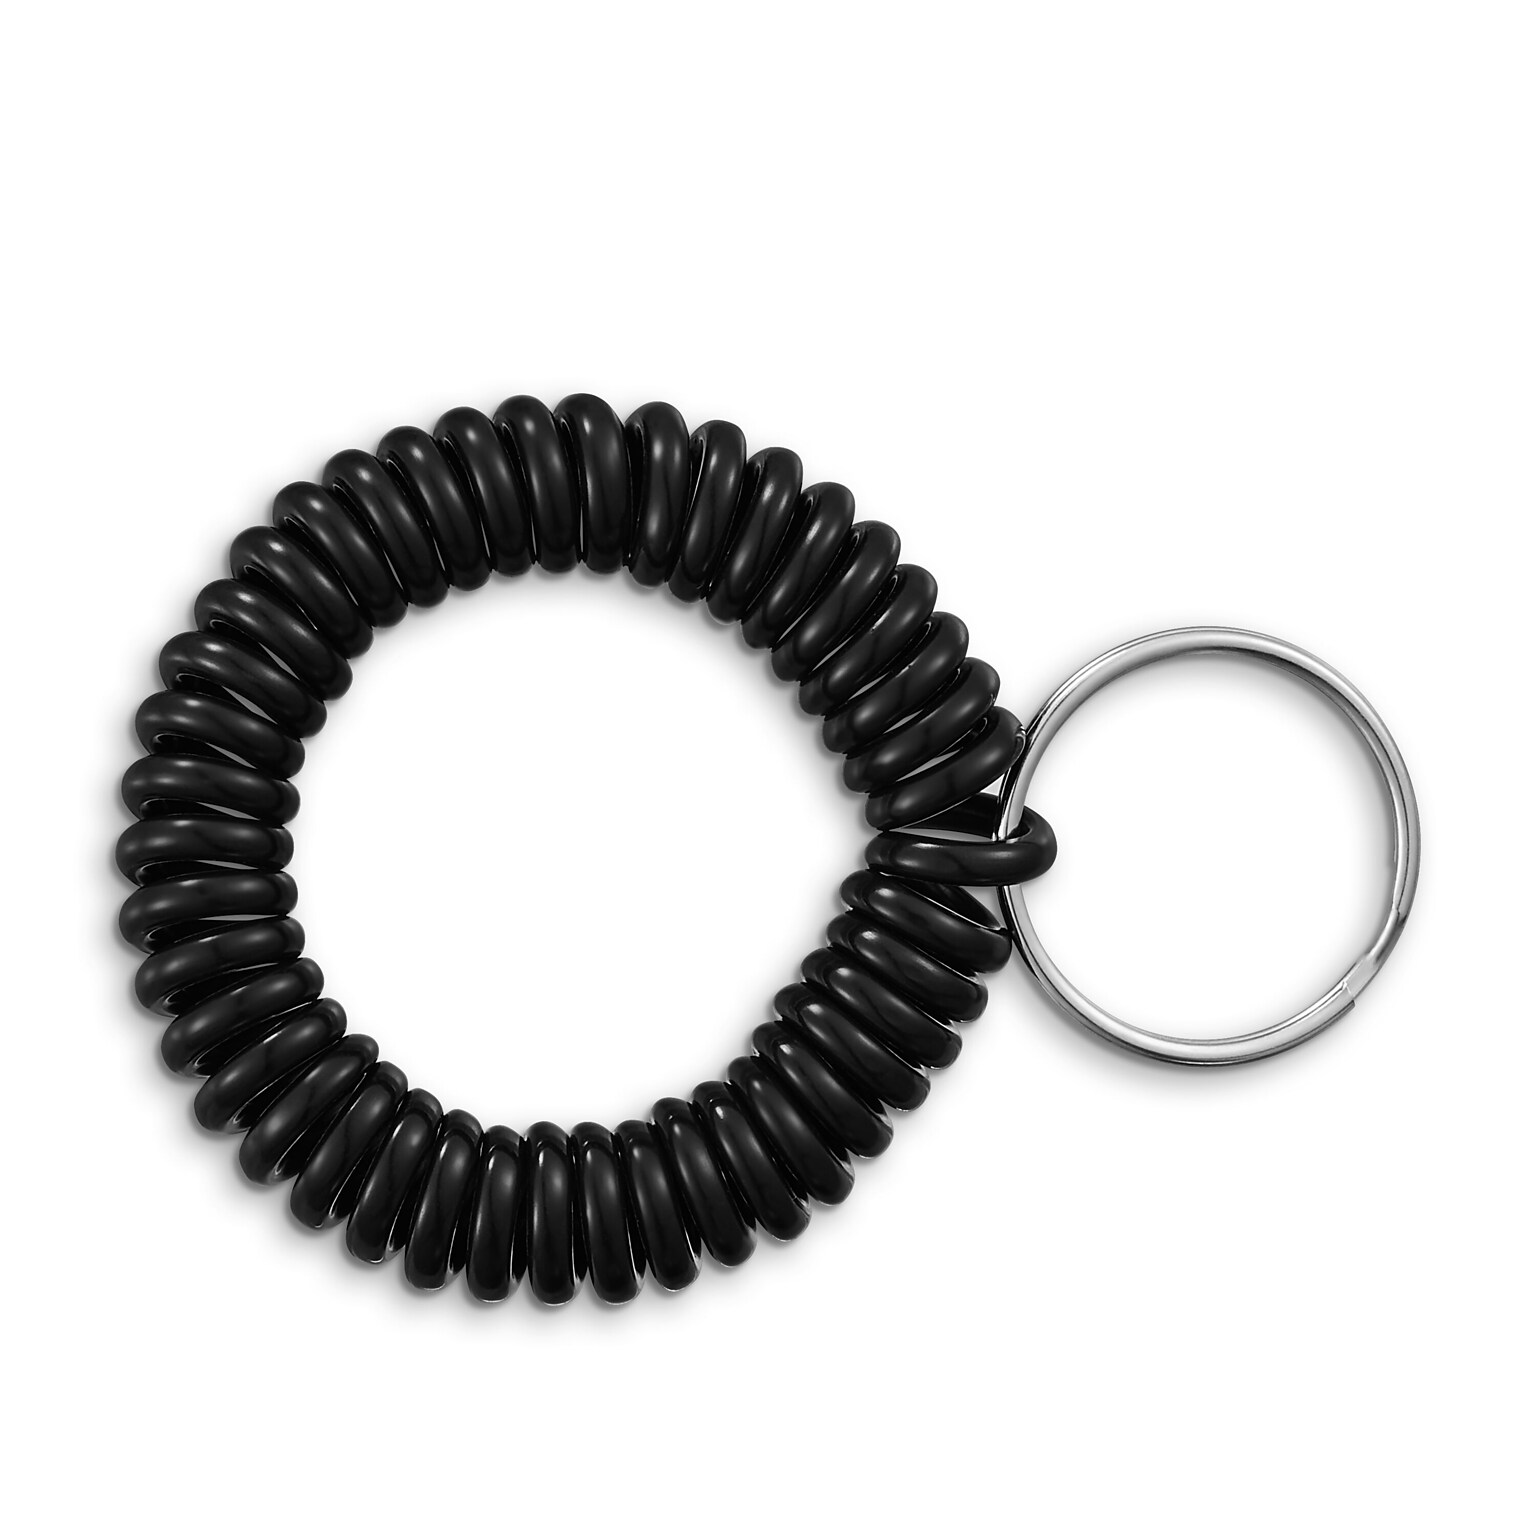 Staples Key Ring Wrist Coil, Black, 5/Pack (22156)